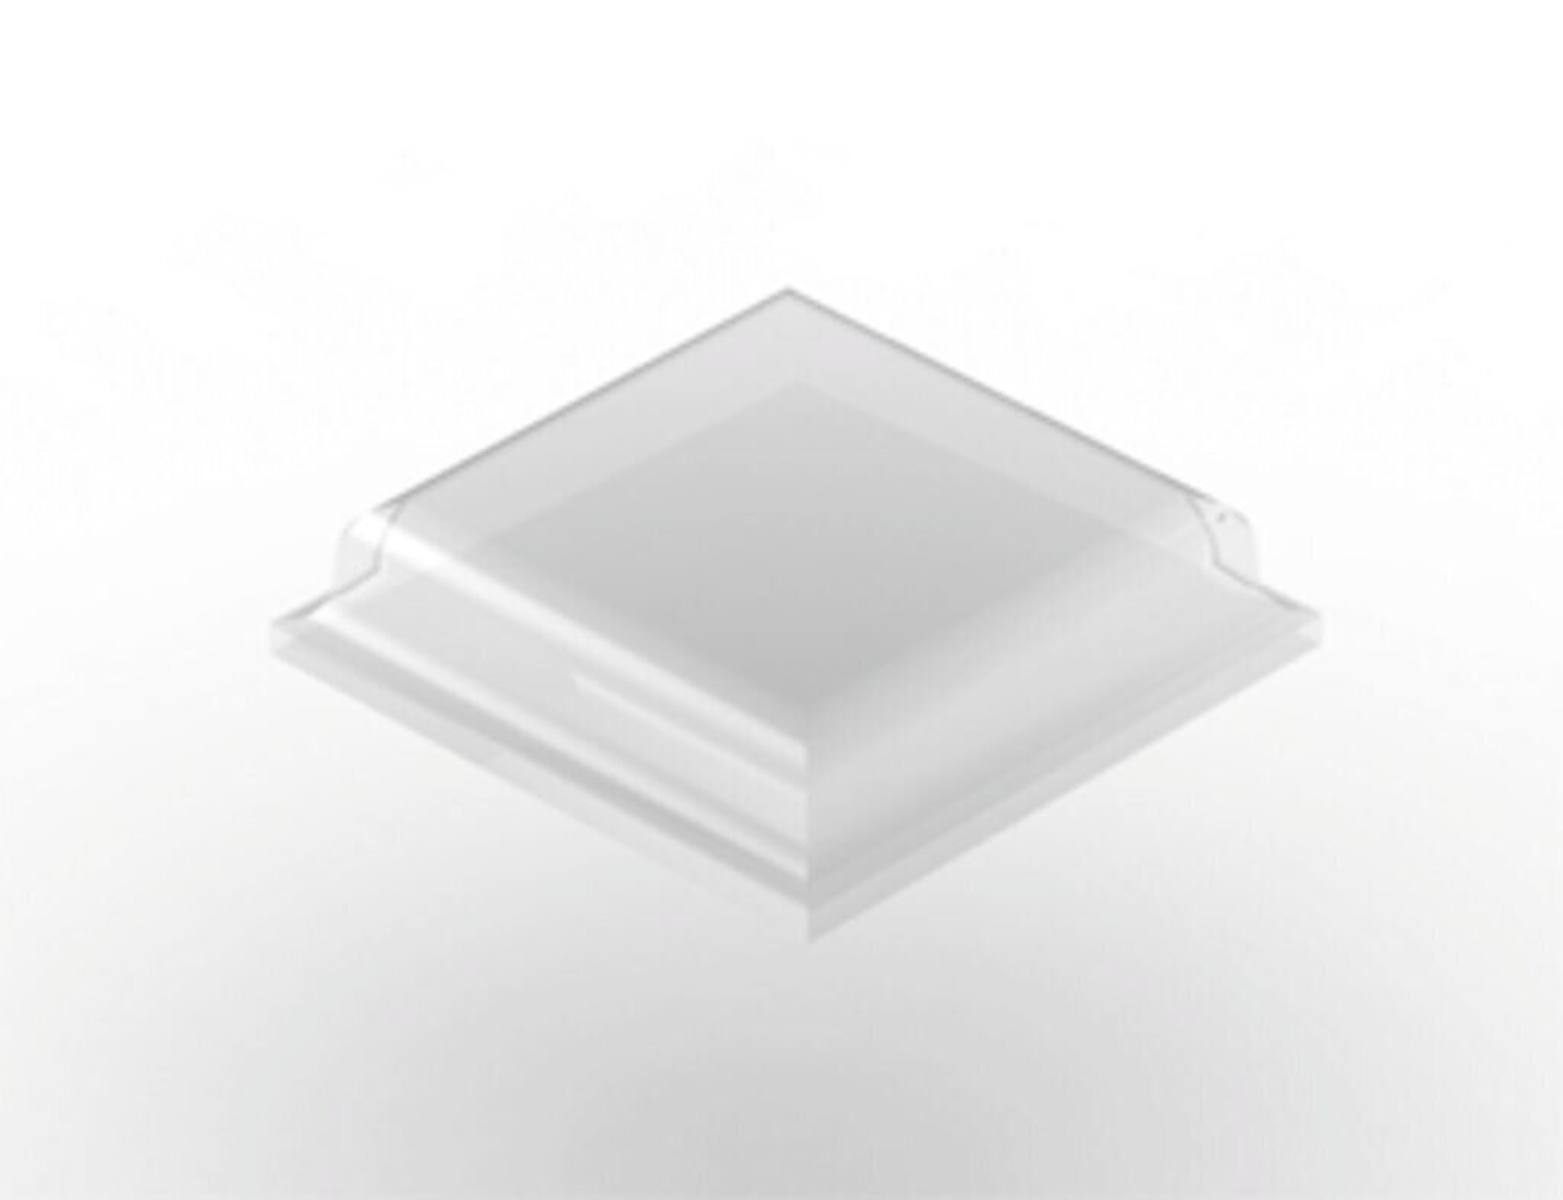 3M Bumpon SJ5307 transparente / ancho: 10,5mm alto: 2,5mm